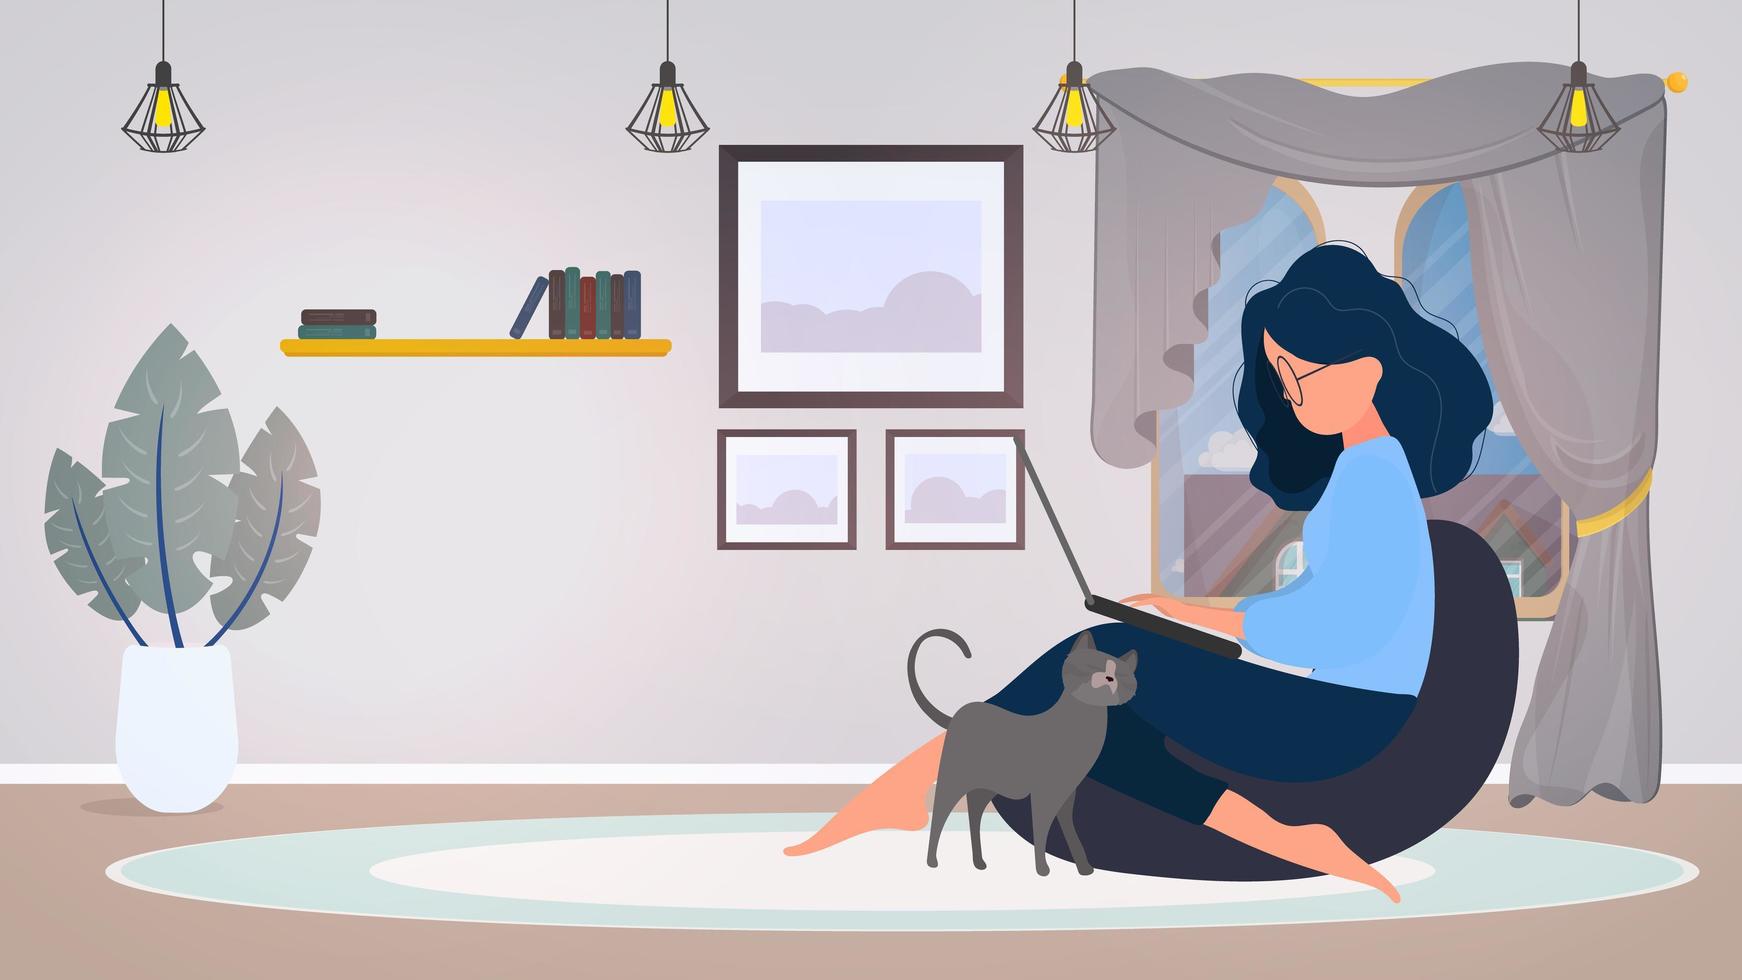 das mädchen sitzt auf einem hocker und arbeitet an einem laptop. Eine Frau mit einem Laptop sitzt auf einem großen Sitzpuff. die Katze reibt am Bein des Mädchens. das Konzept des komfortablen Arbeitens im Büro oder zu Hause. Vektor. vektor